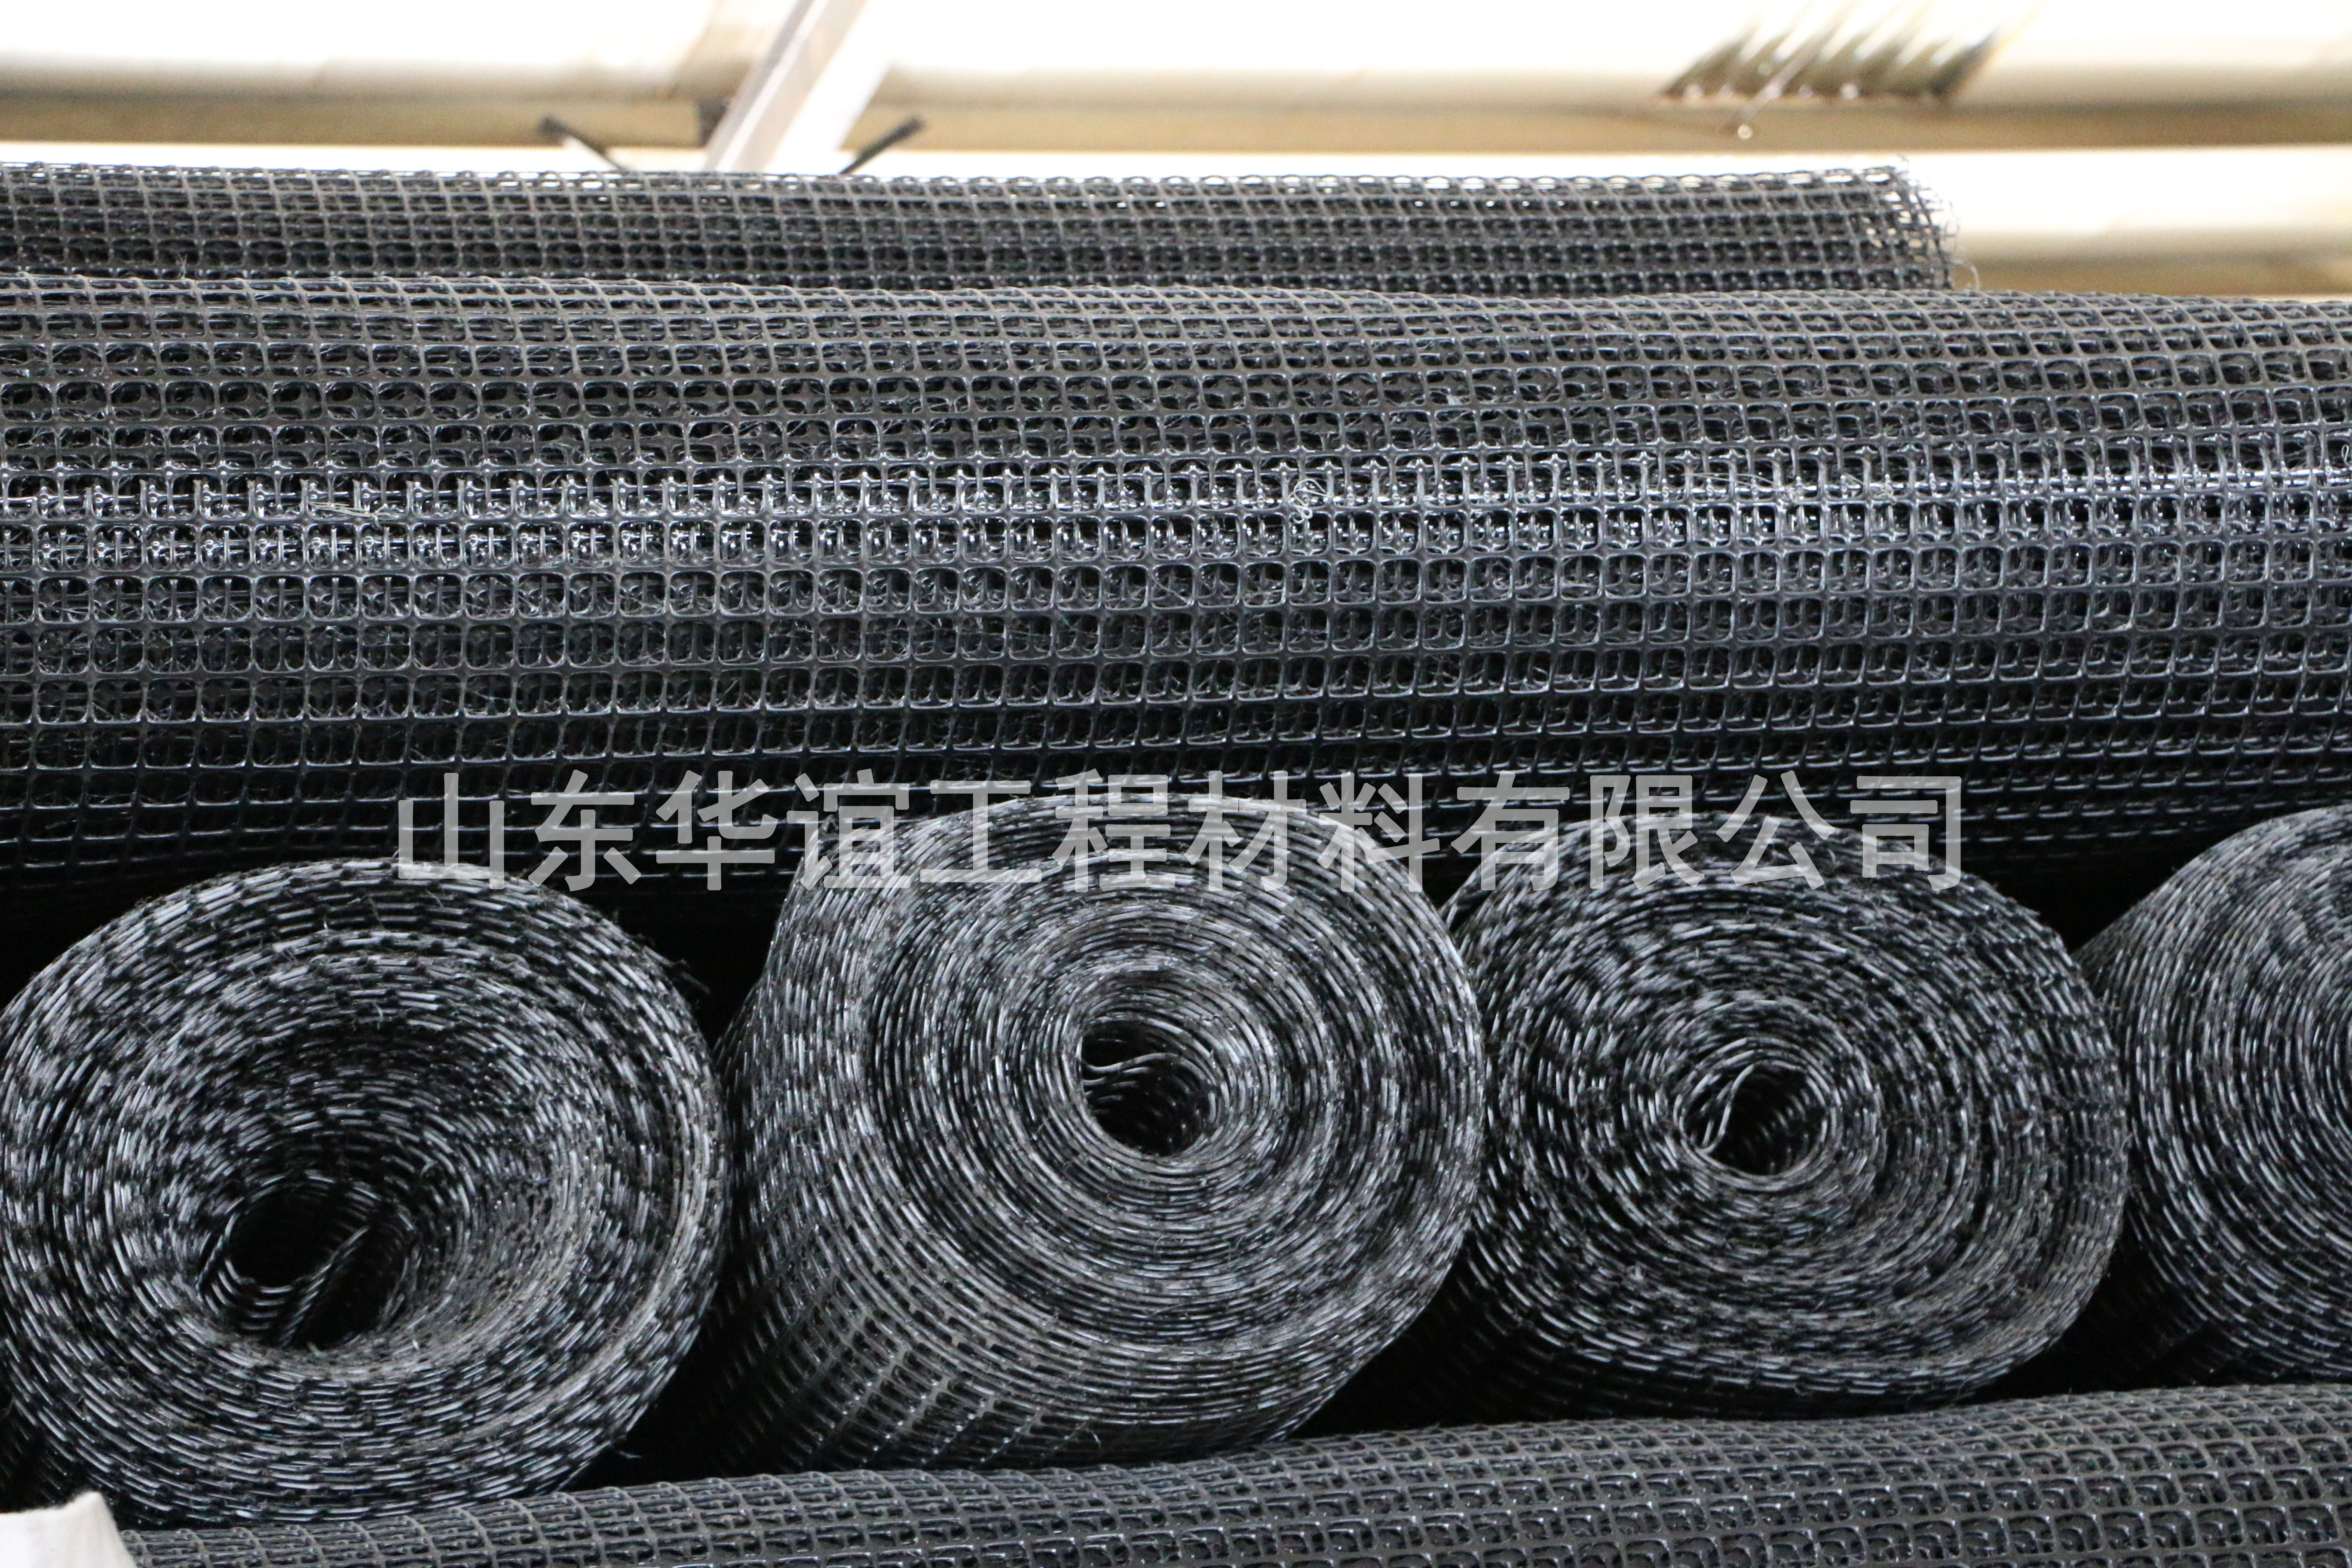 贵州矿用双向塑料土工格栅ji大程度增强了地基稳固能力